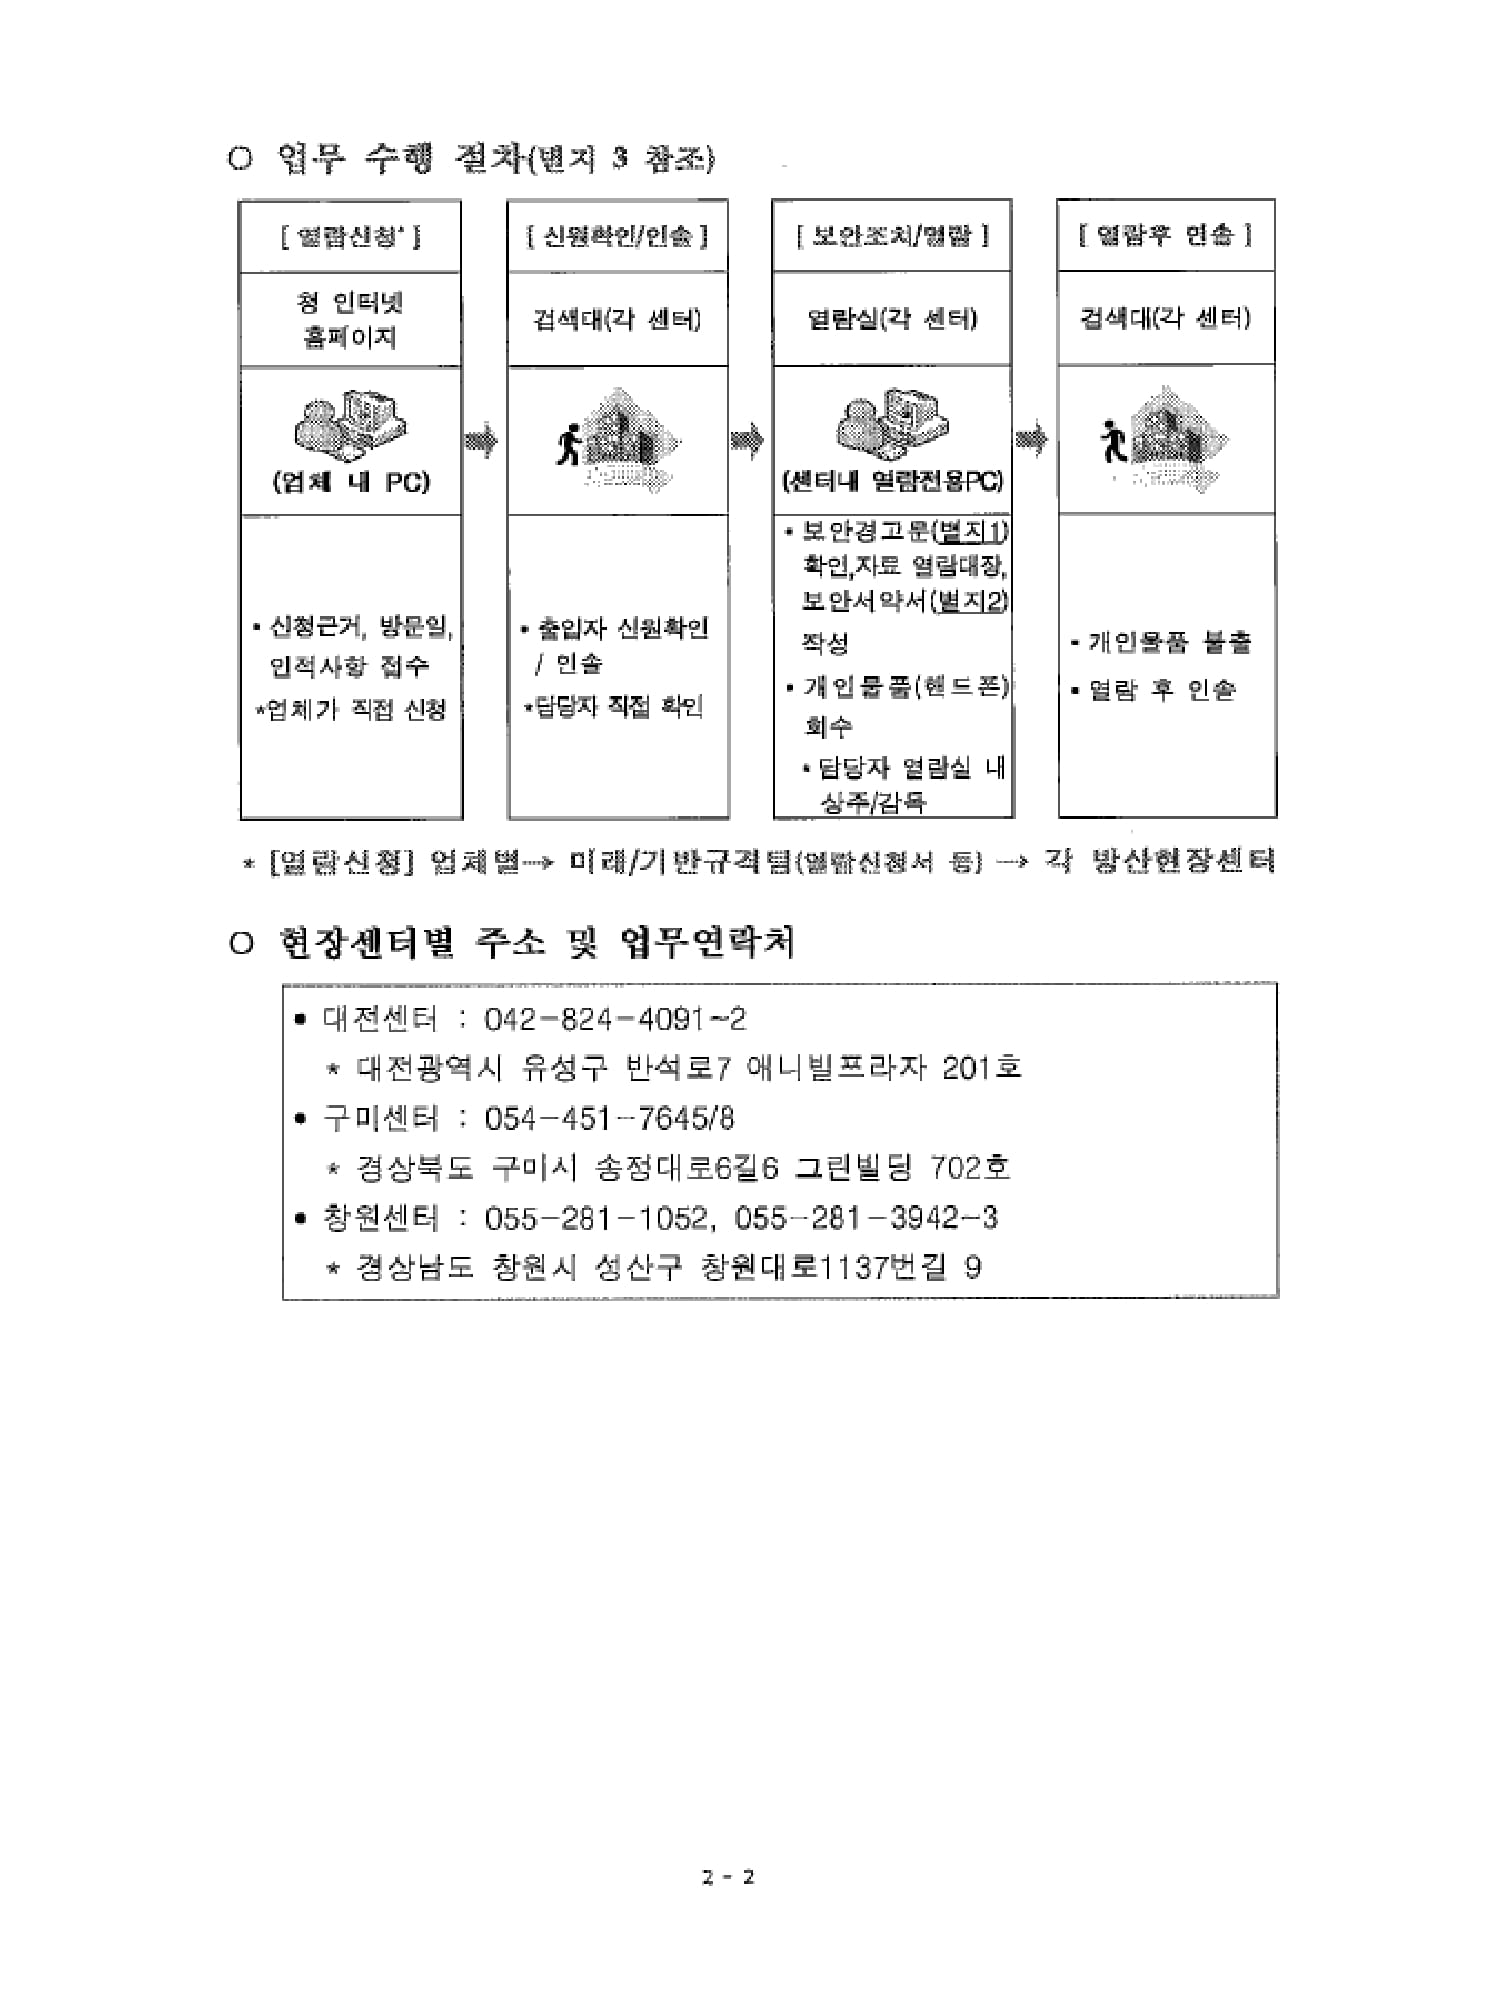 방산현장지원센터 국방규격 열람 지원 안내-2.jpg